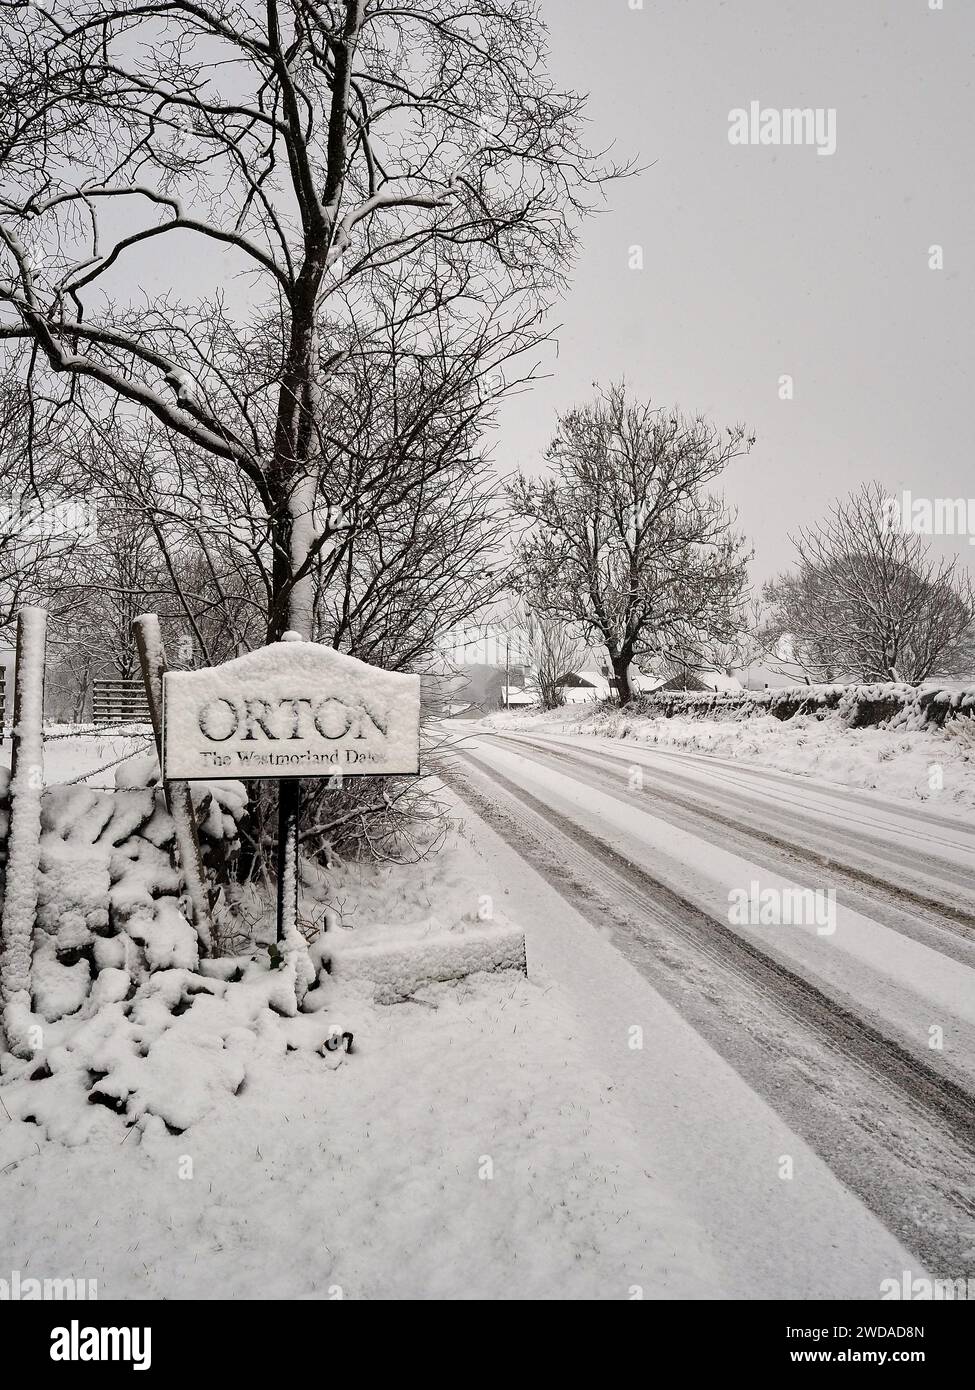 Schnee fällt in einer winterlichen Szene in Nordengland mit einem Ortsschild mit angrenzender Straße und Bäumen unter einer Schneedecke. Stockfoto